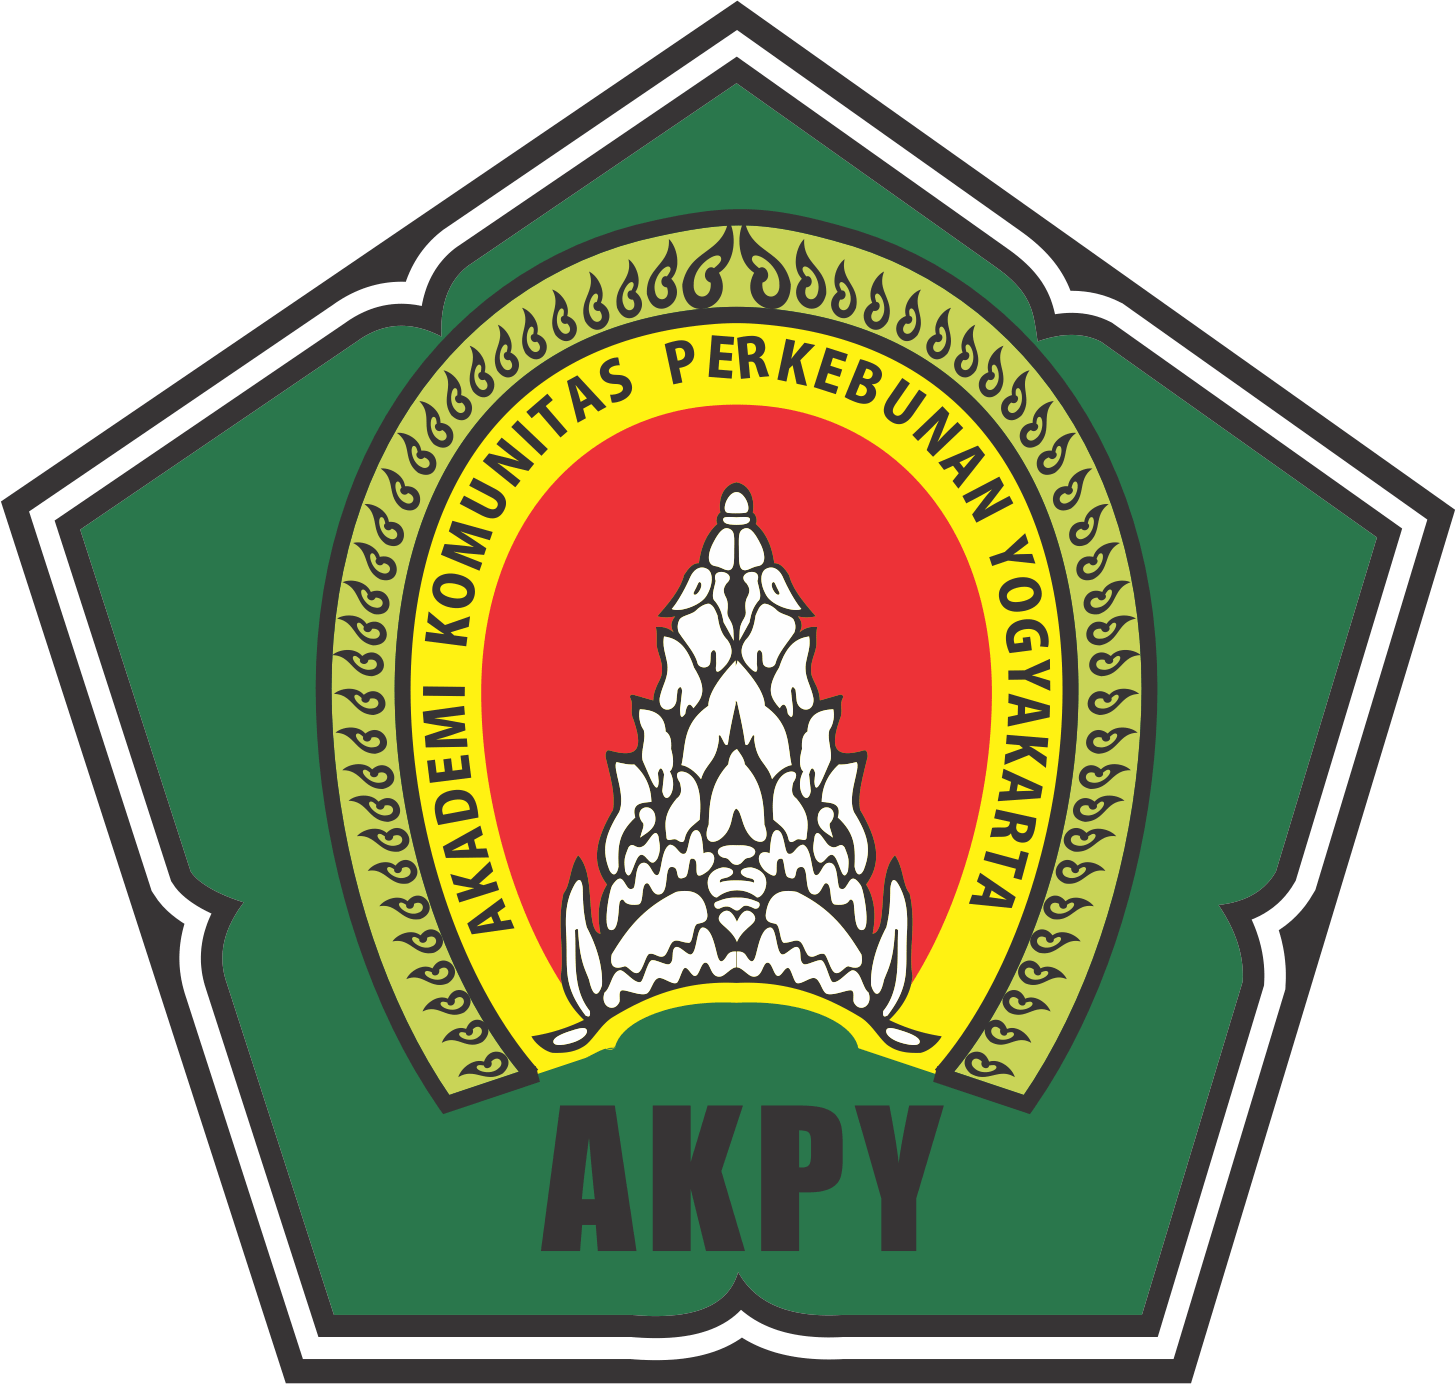 Akademi Komunitas Perkebunan Yogyakarta